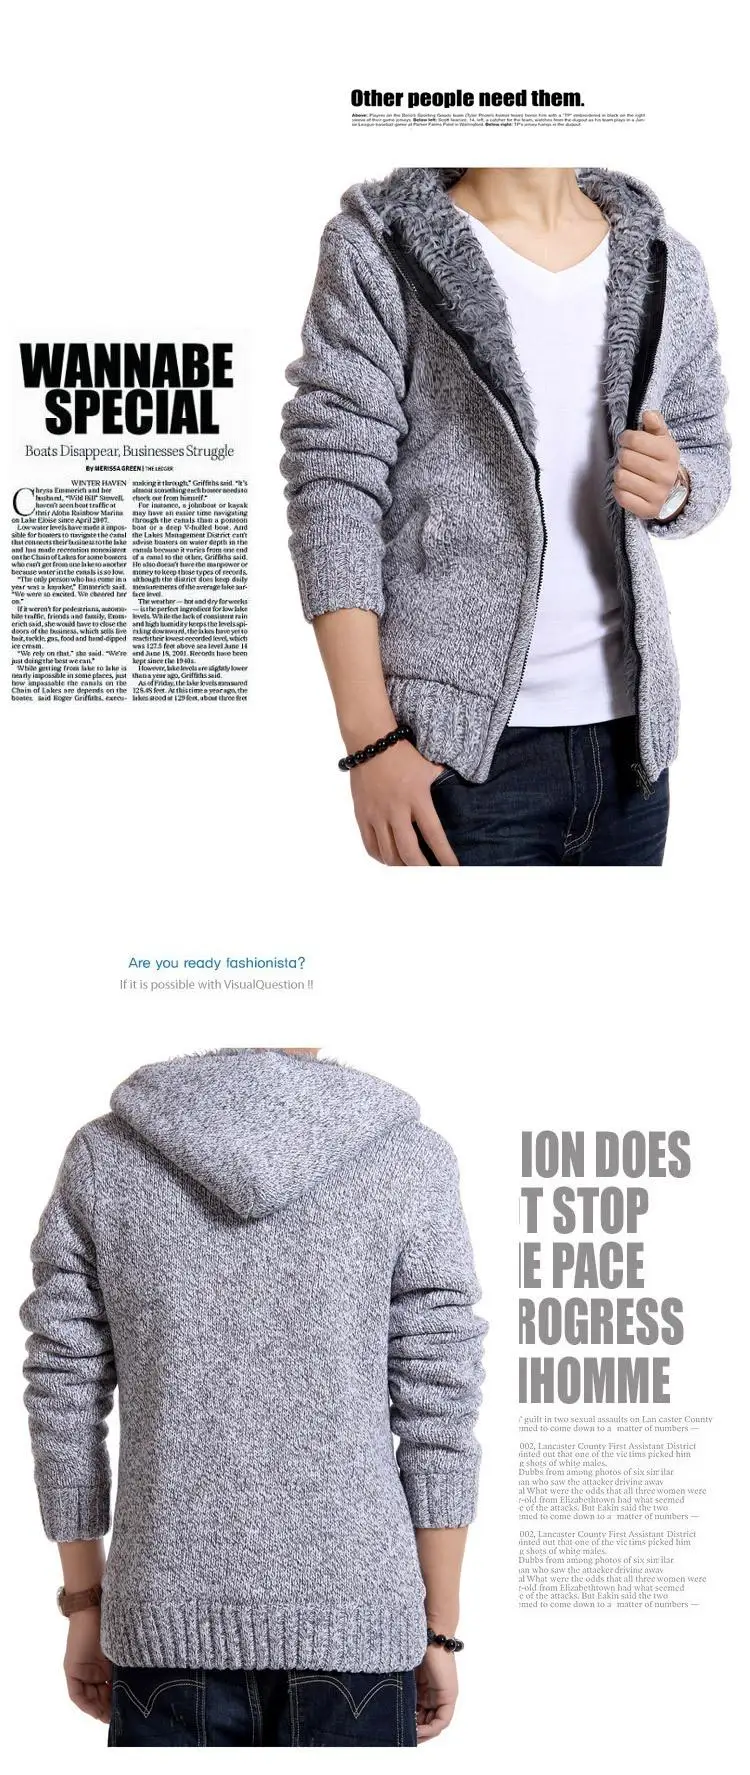 Лидер продаж Модные мужские свитера Бархат Теплый кардиган с капюшоном утепленный свитер